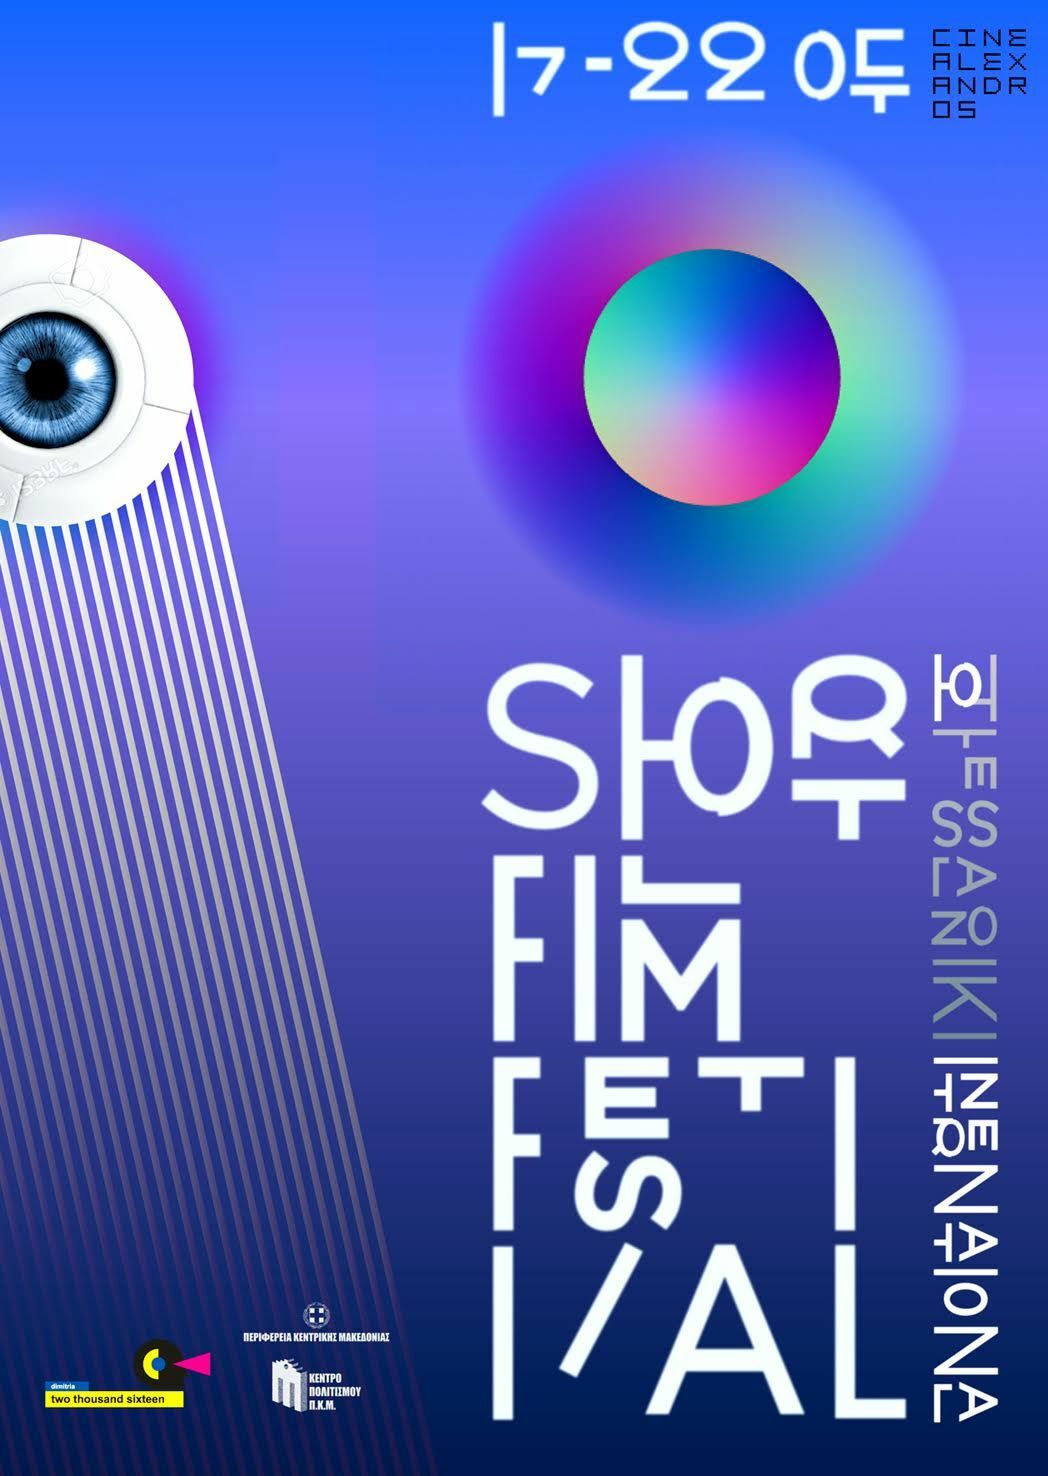 Ξεκινάει το Διεθνές Φεστιβάλ Ταινιών Μικρού Μήκους